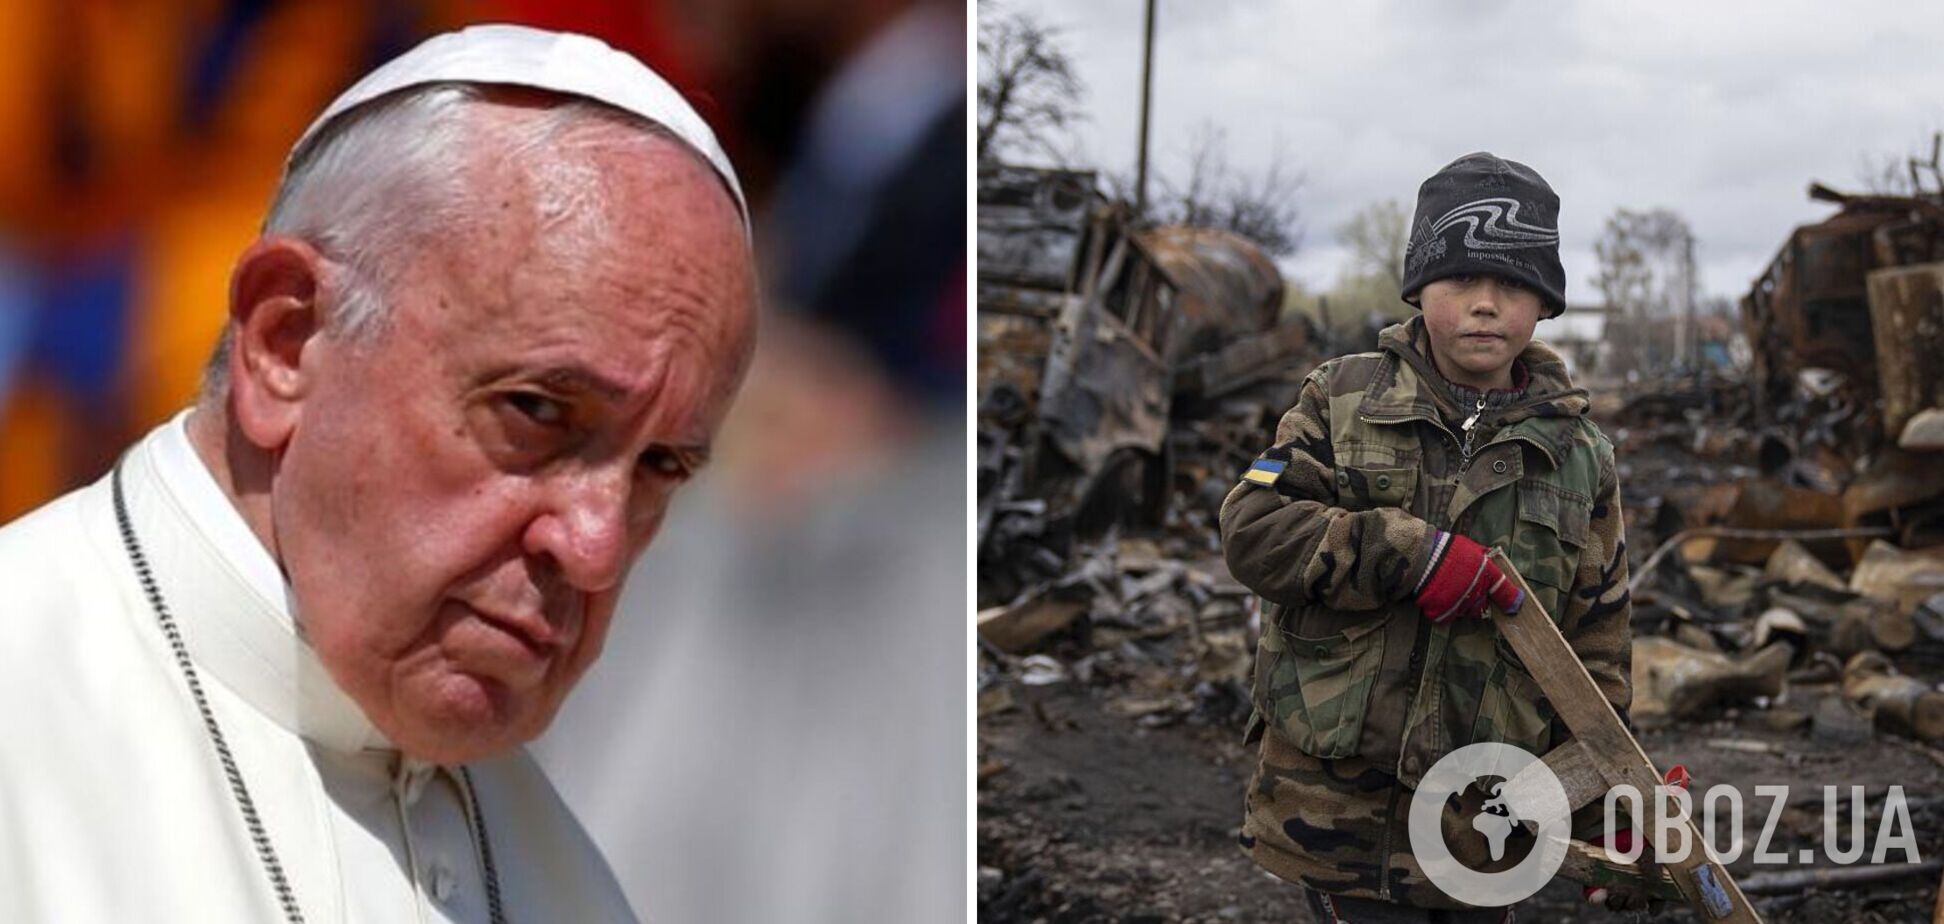 Папа Римський засудив жорстокість РФ в Україні, але припустив, що 'війна була спровокована'